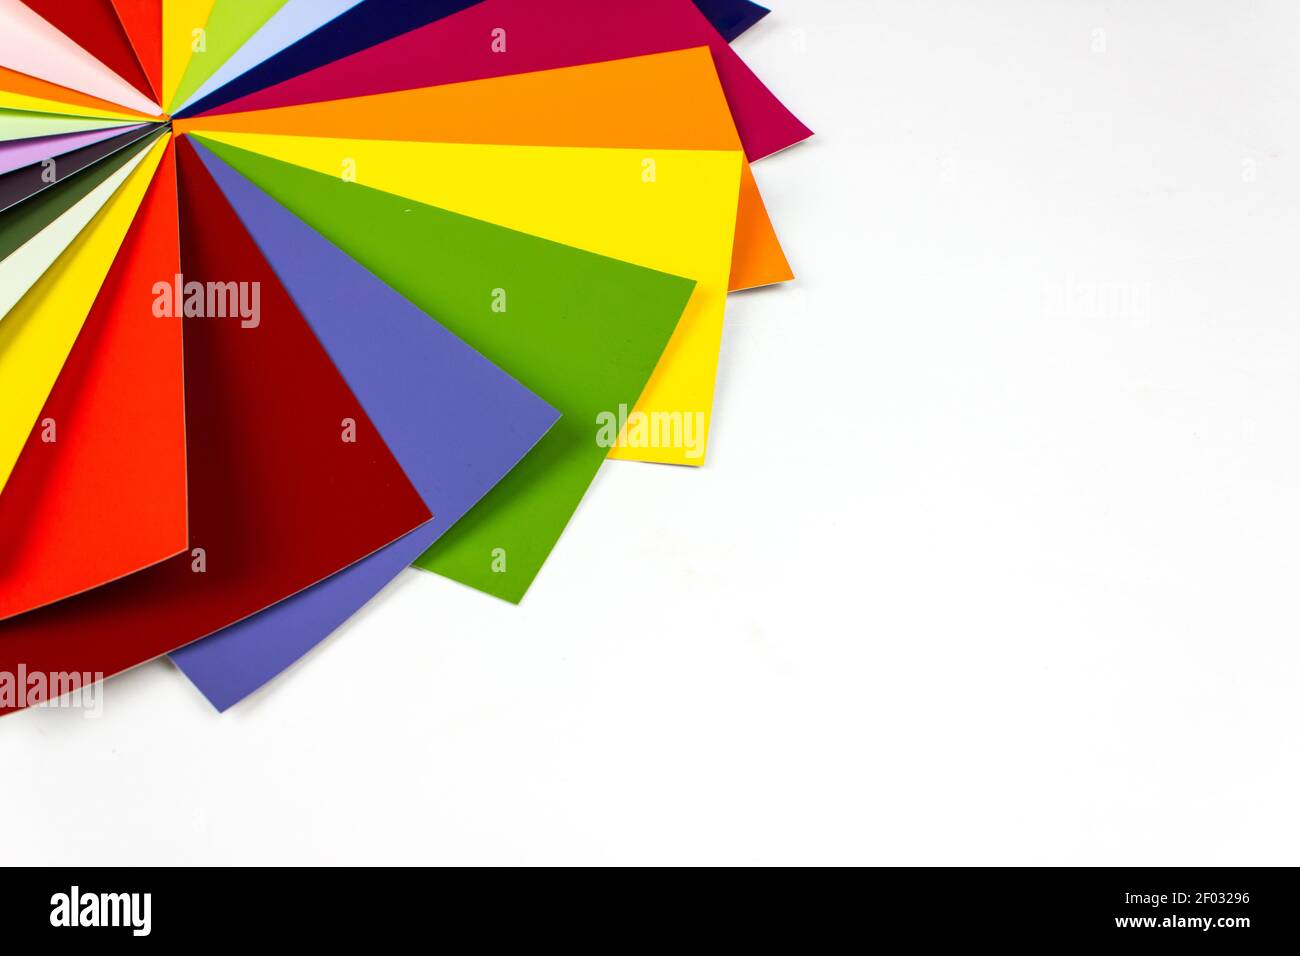 Guide des couleurs sur fond clair, exemples de définition des couleurs. Vue de dessus. Banque D'Images